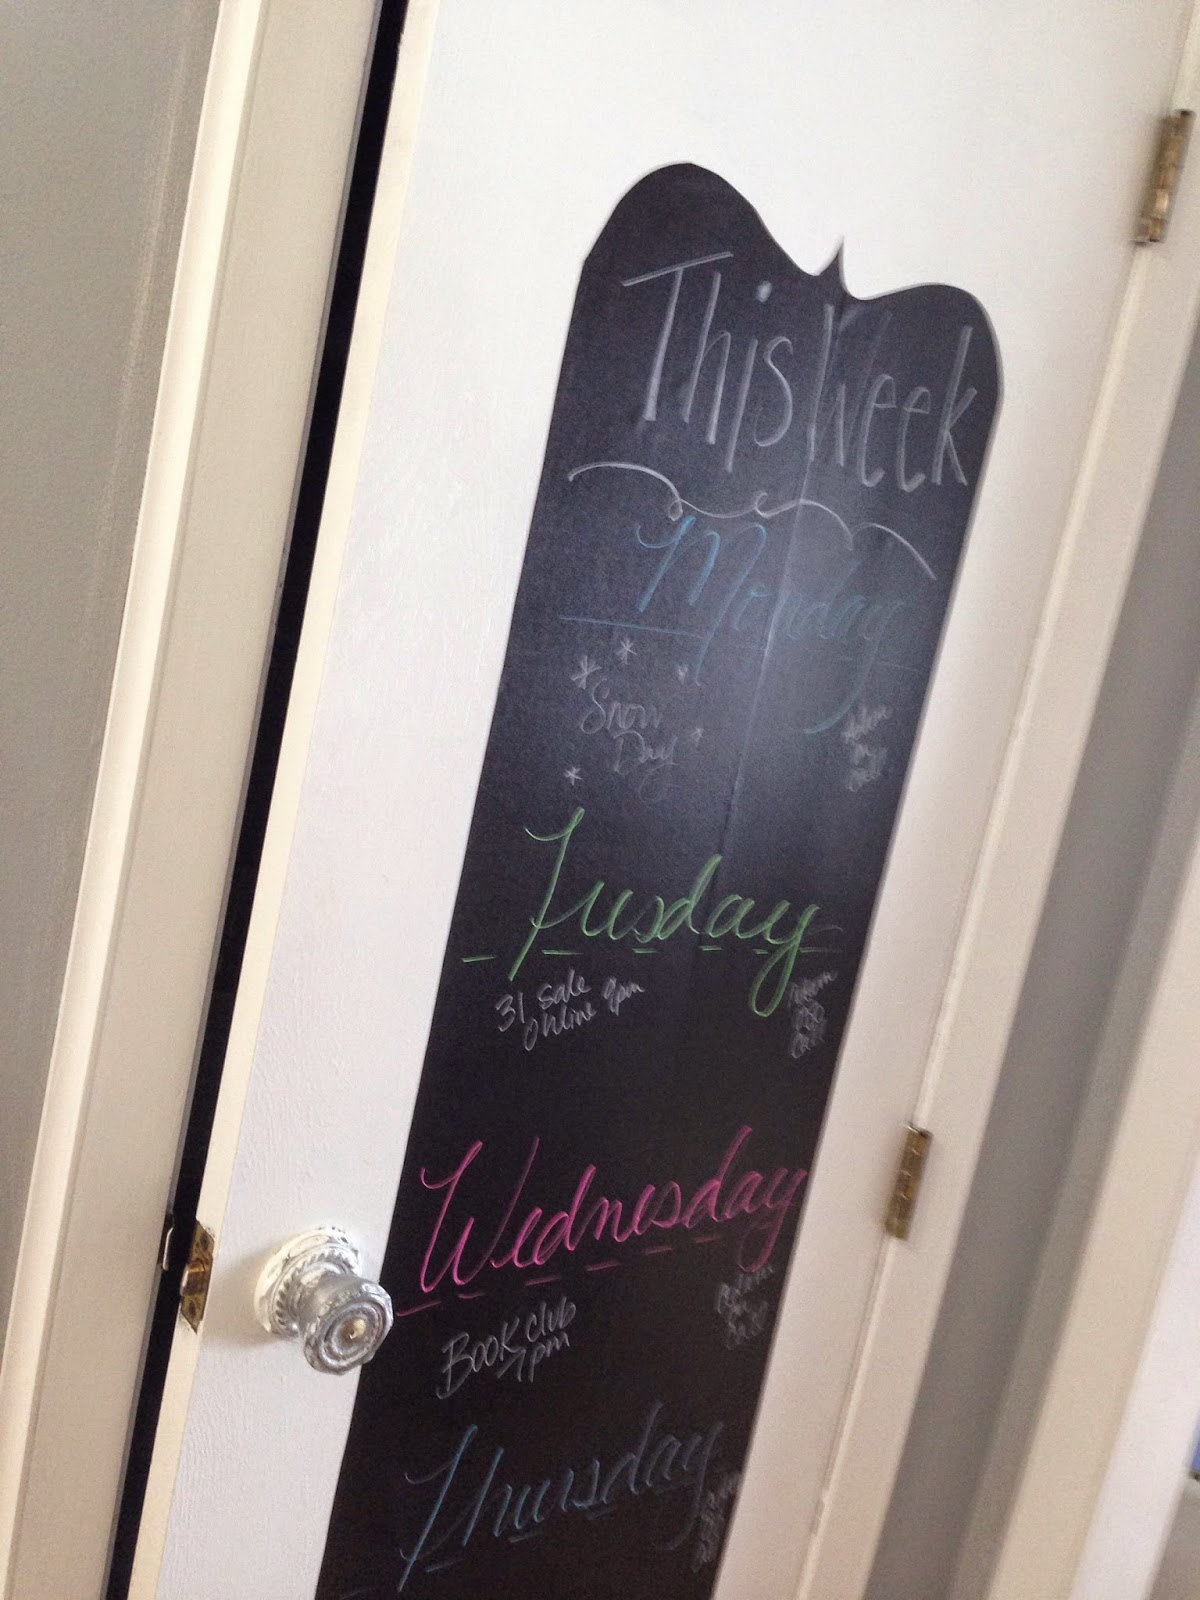 Chalkboard Pantry Door Update